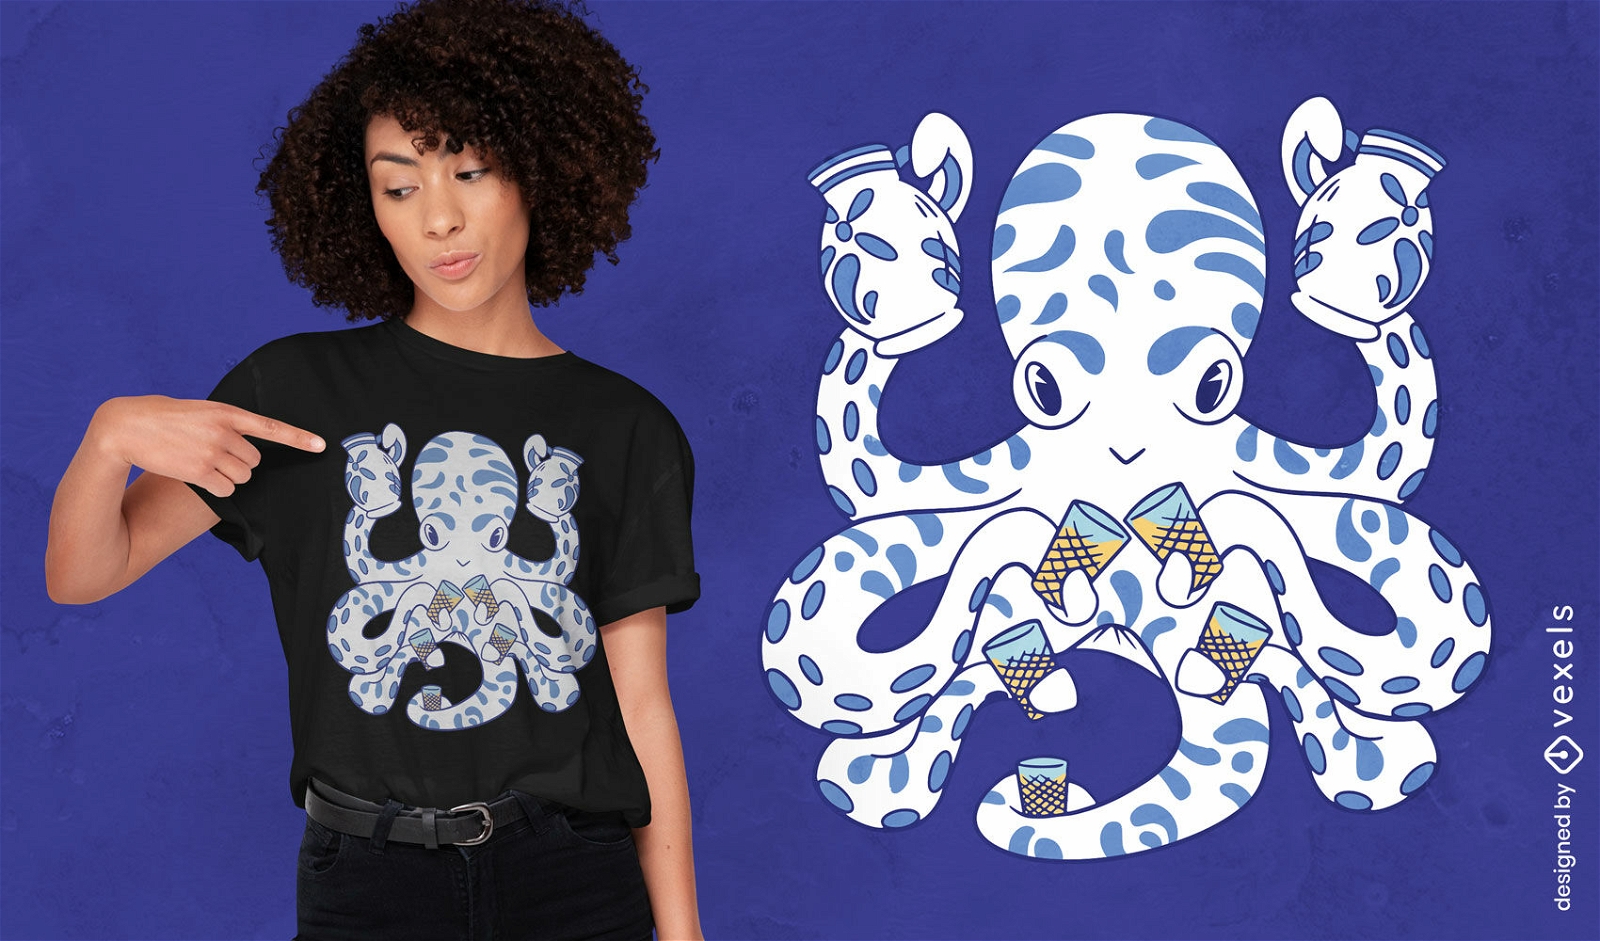 Pottery octopus t-shirt design